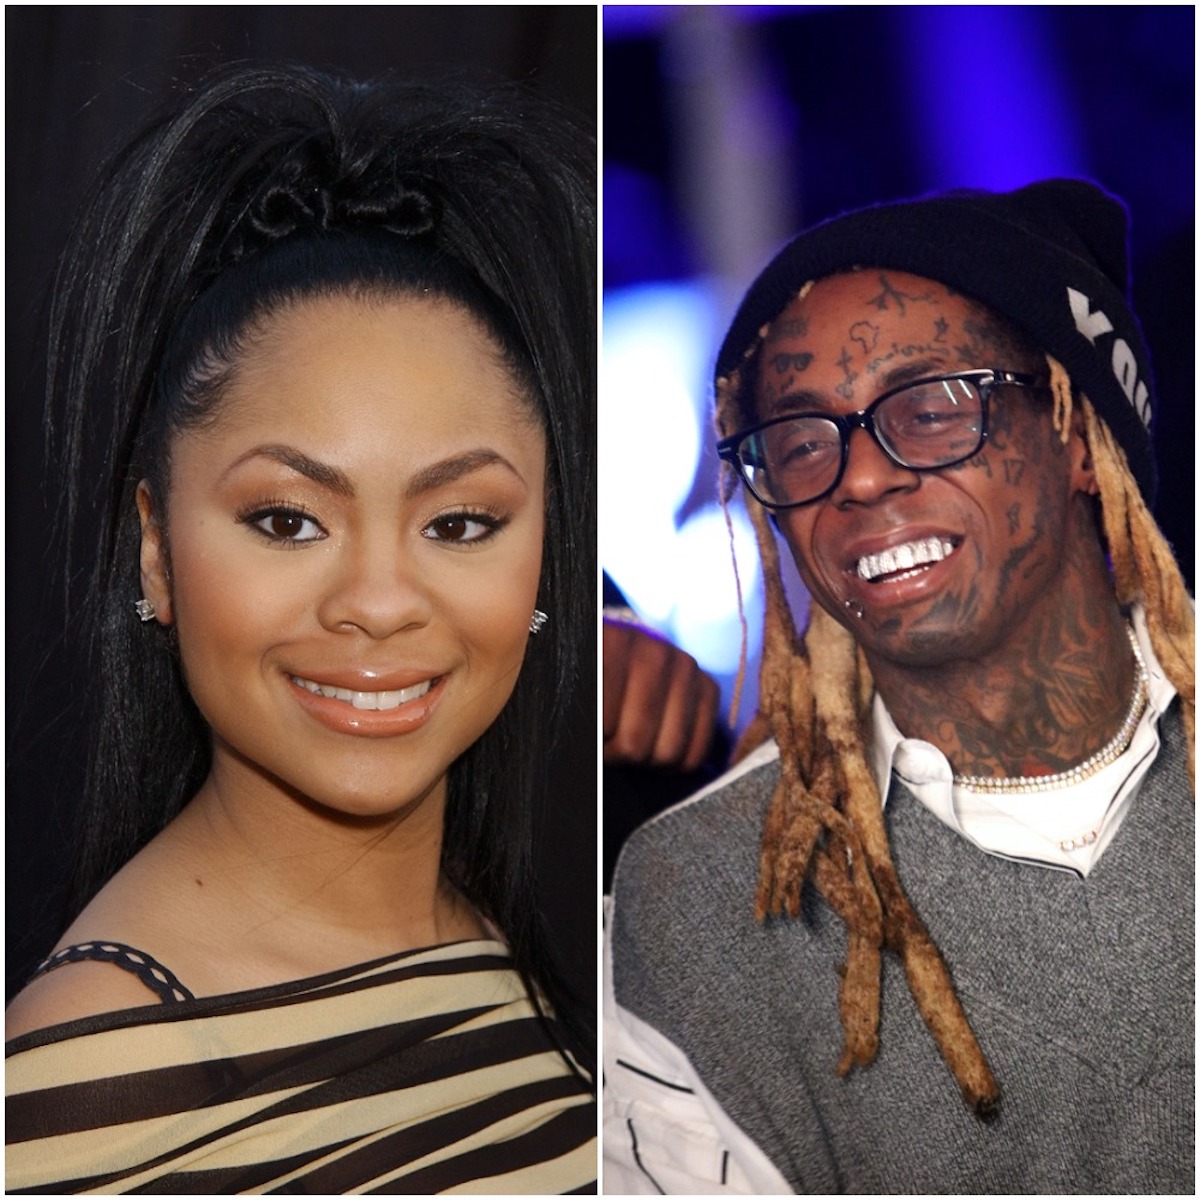 Nivea and Lil Wayne